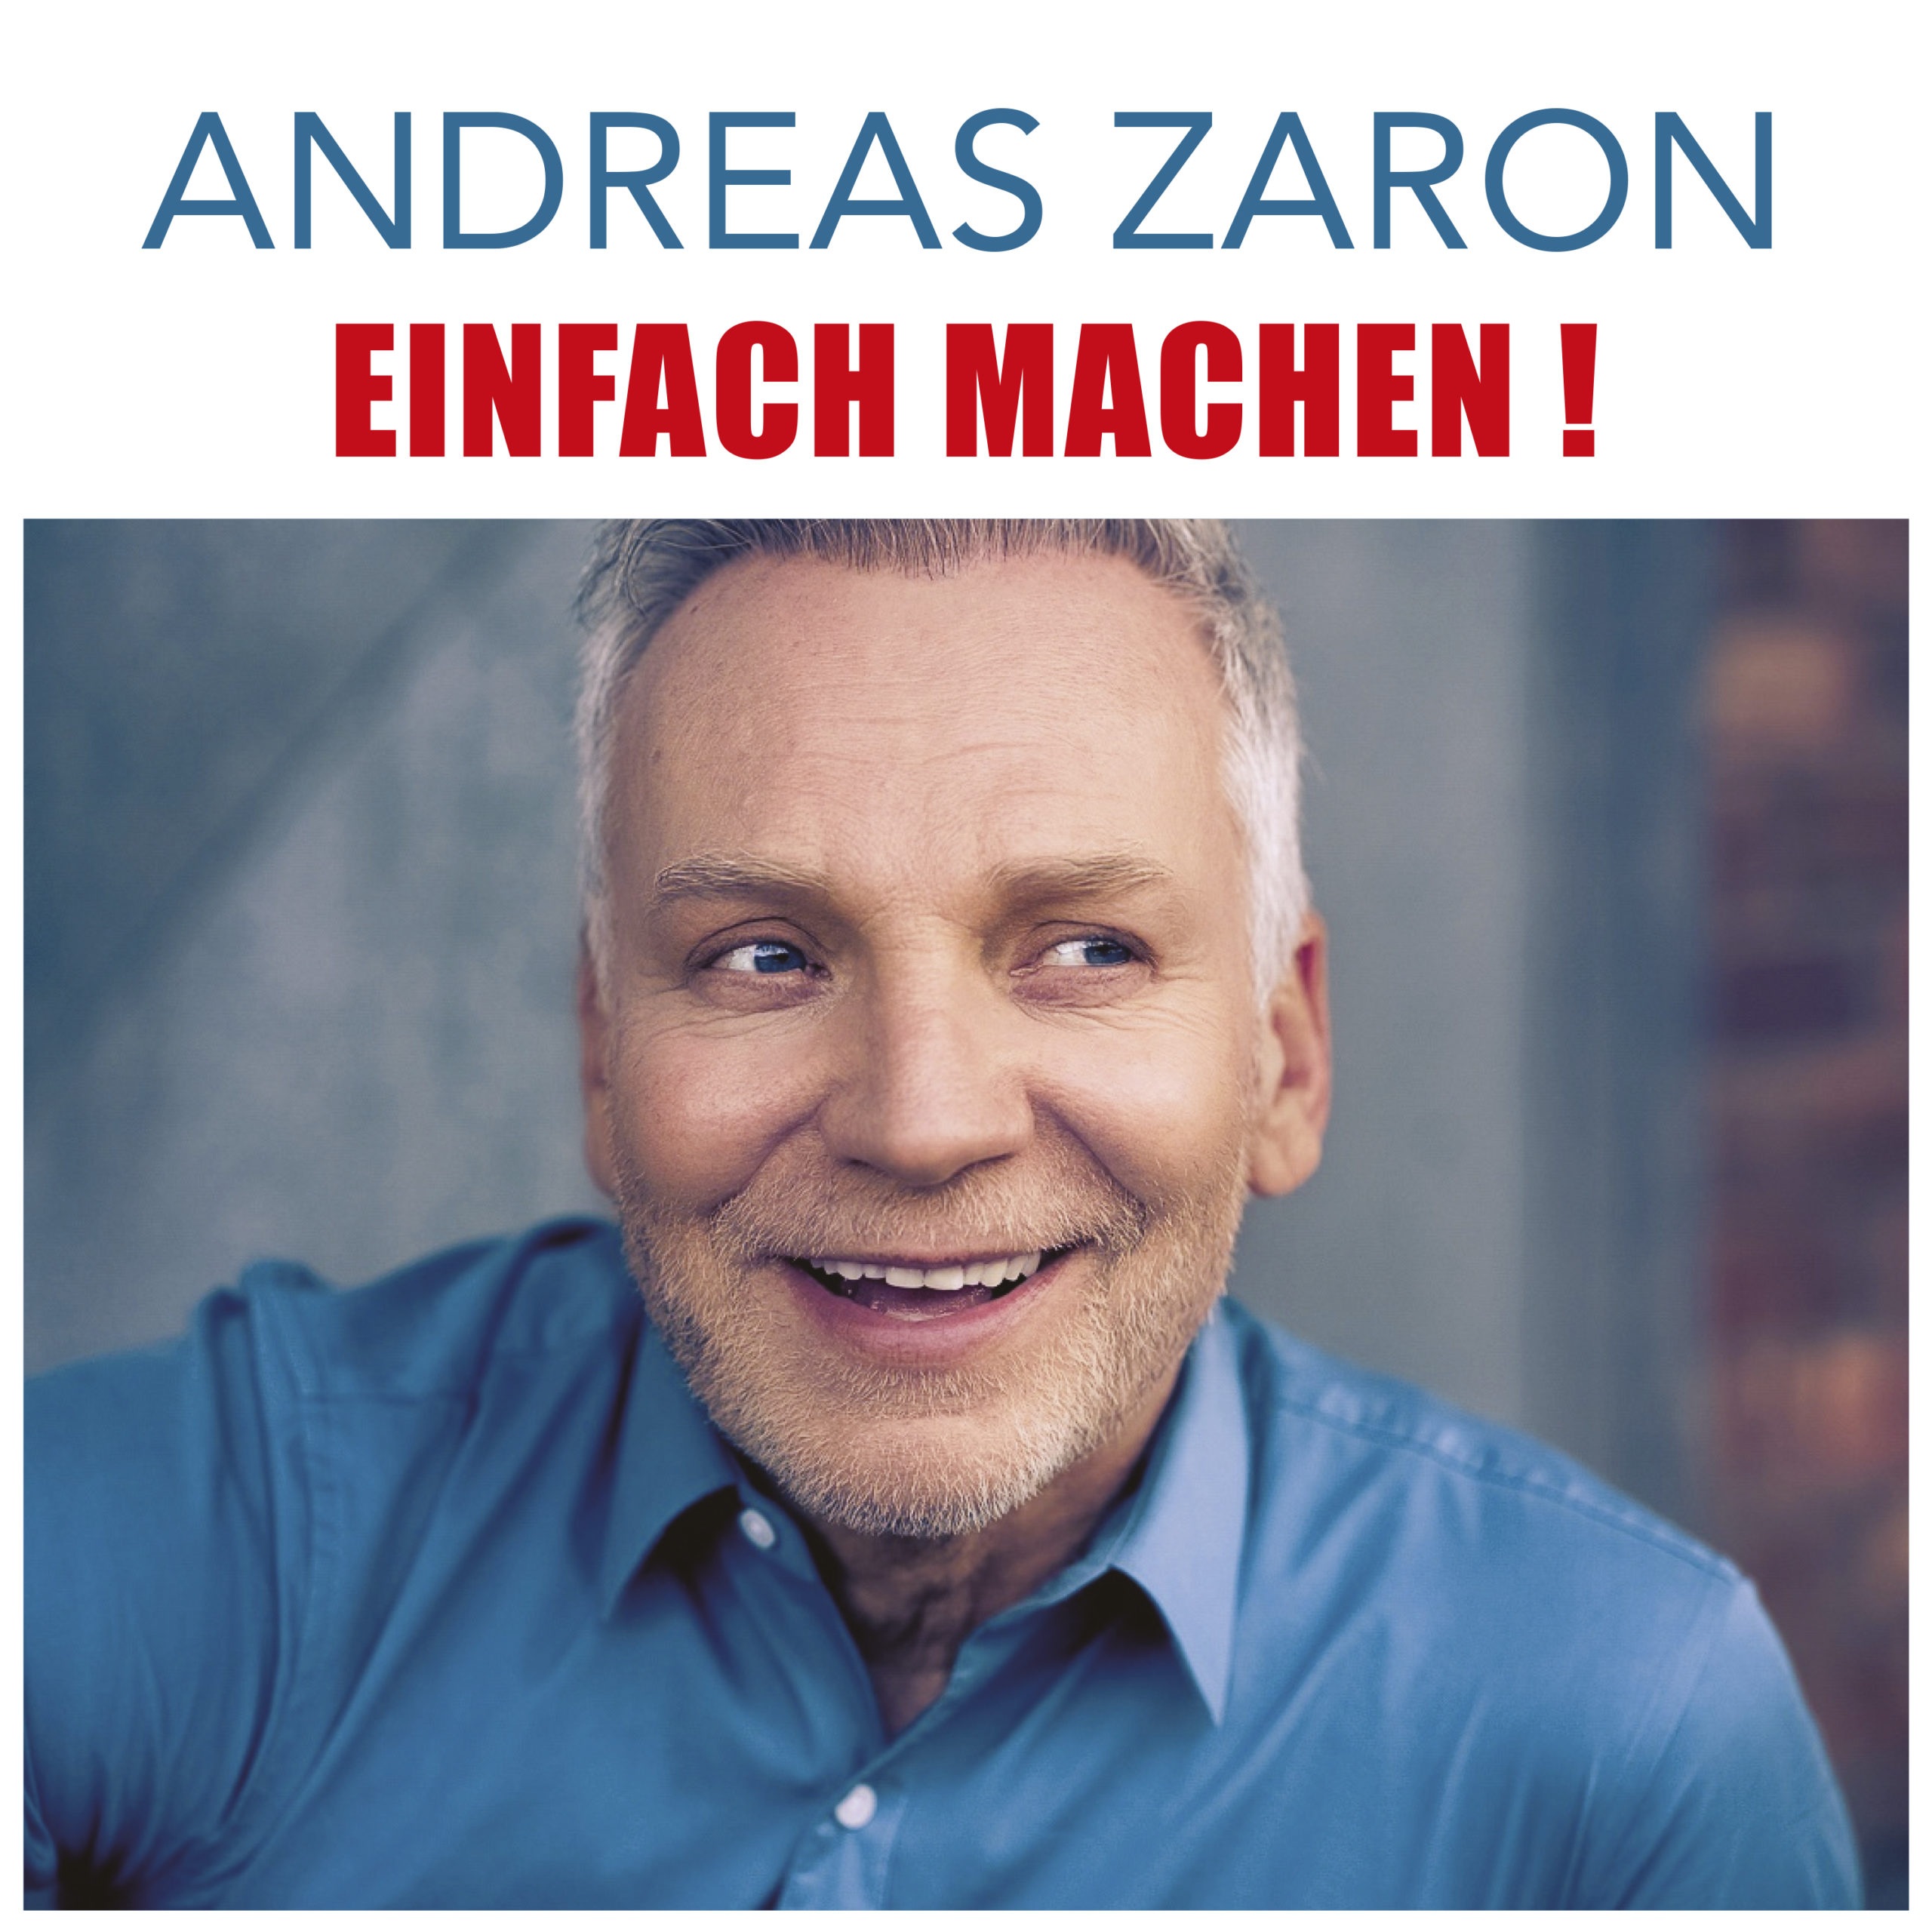 ANDREAS ZARON * Einfach machen! (Download-Track)